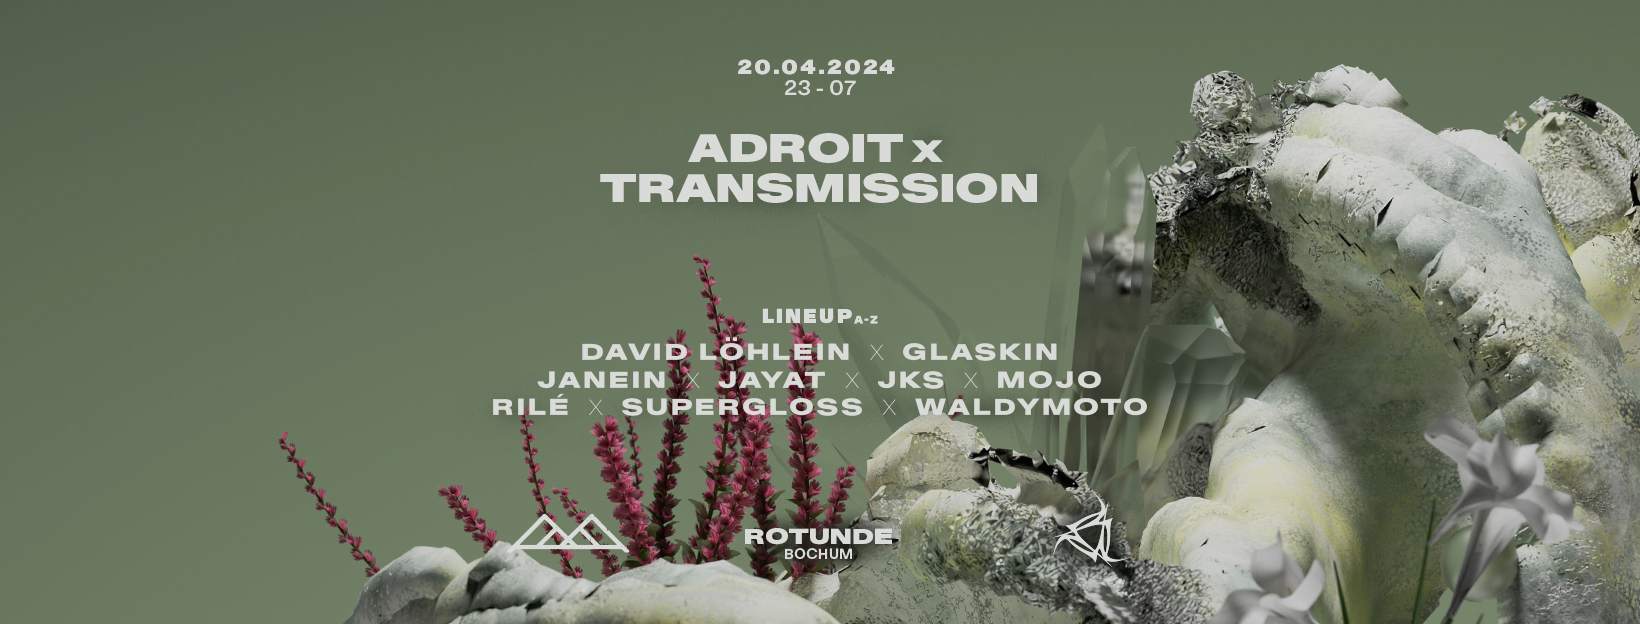 Adroit x Transmission - フライヤー表